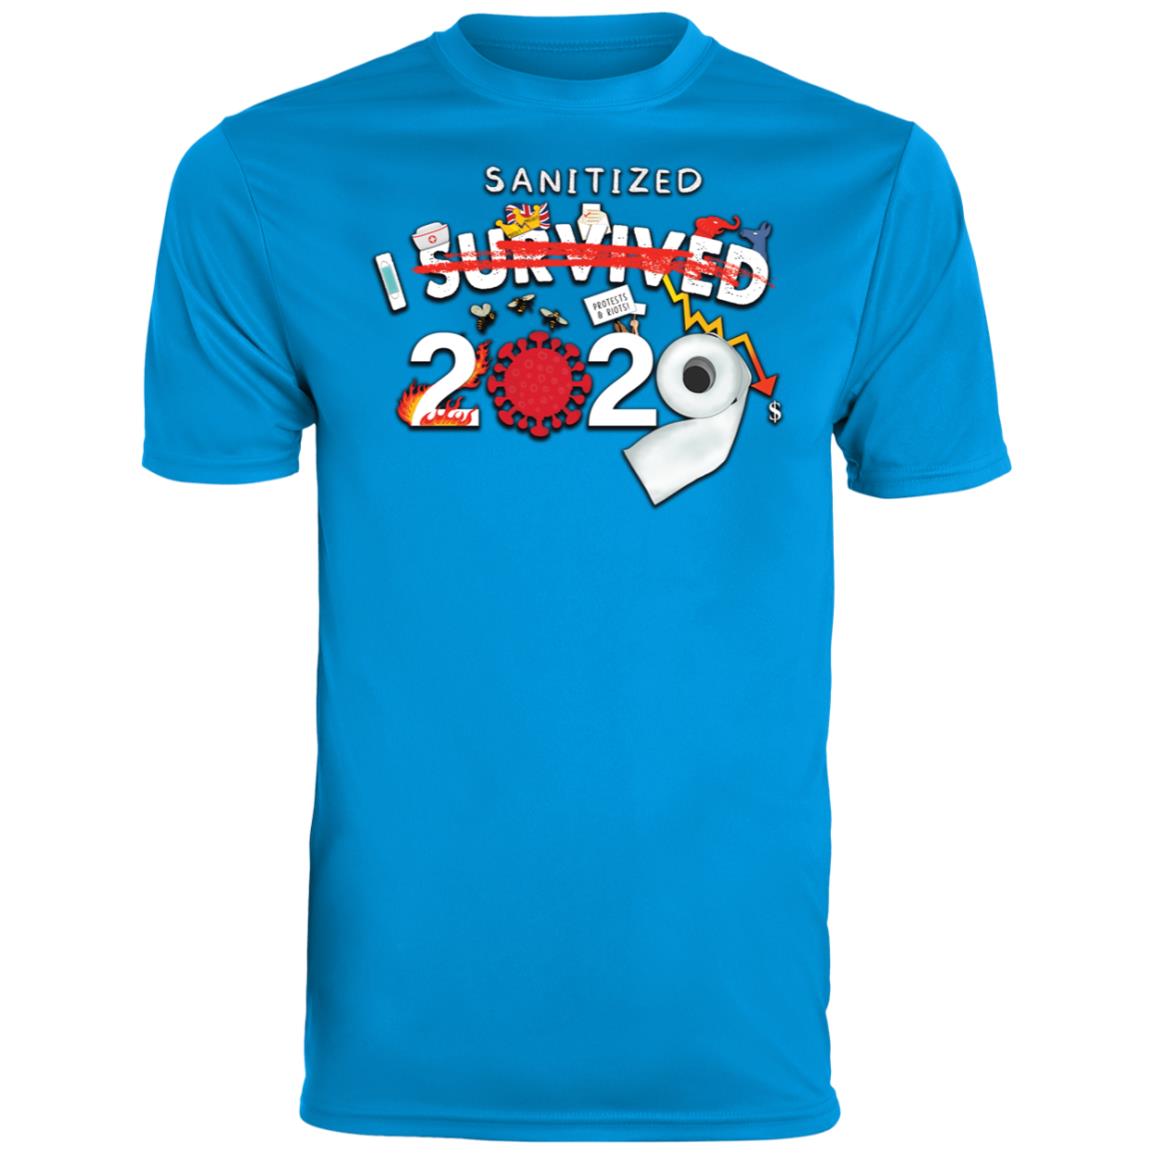 I Sanitized 2020 - Youth Wicking T-Shirt